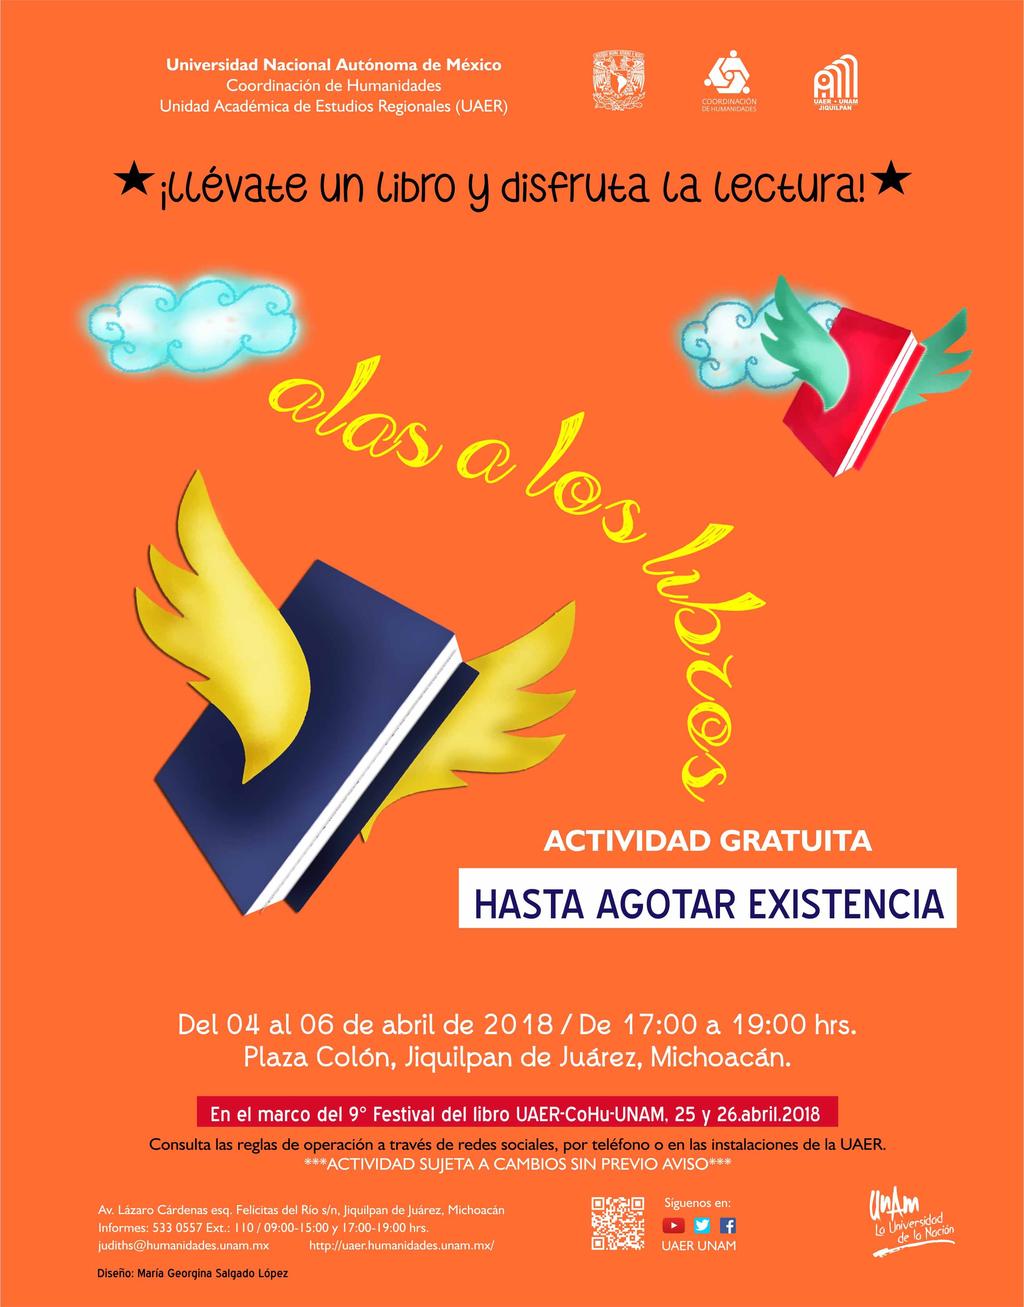 UNIVERSIDAD NACIONAL AUTÓNOMA DE MÉXICO invitan al proyecto "ALAS A LOS LIBROS" En el marco del 9 Festival del Libro UAER-CoHu-UNAM Actividad gratuita Plaza